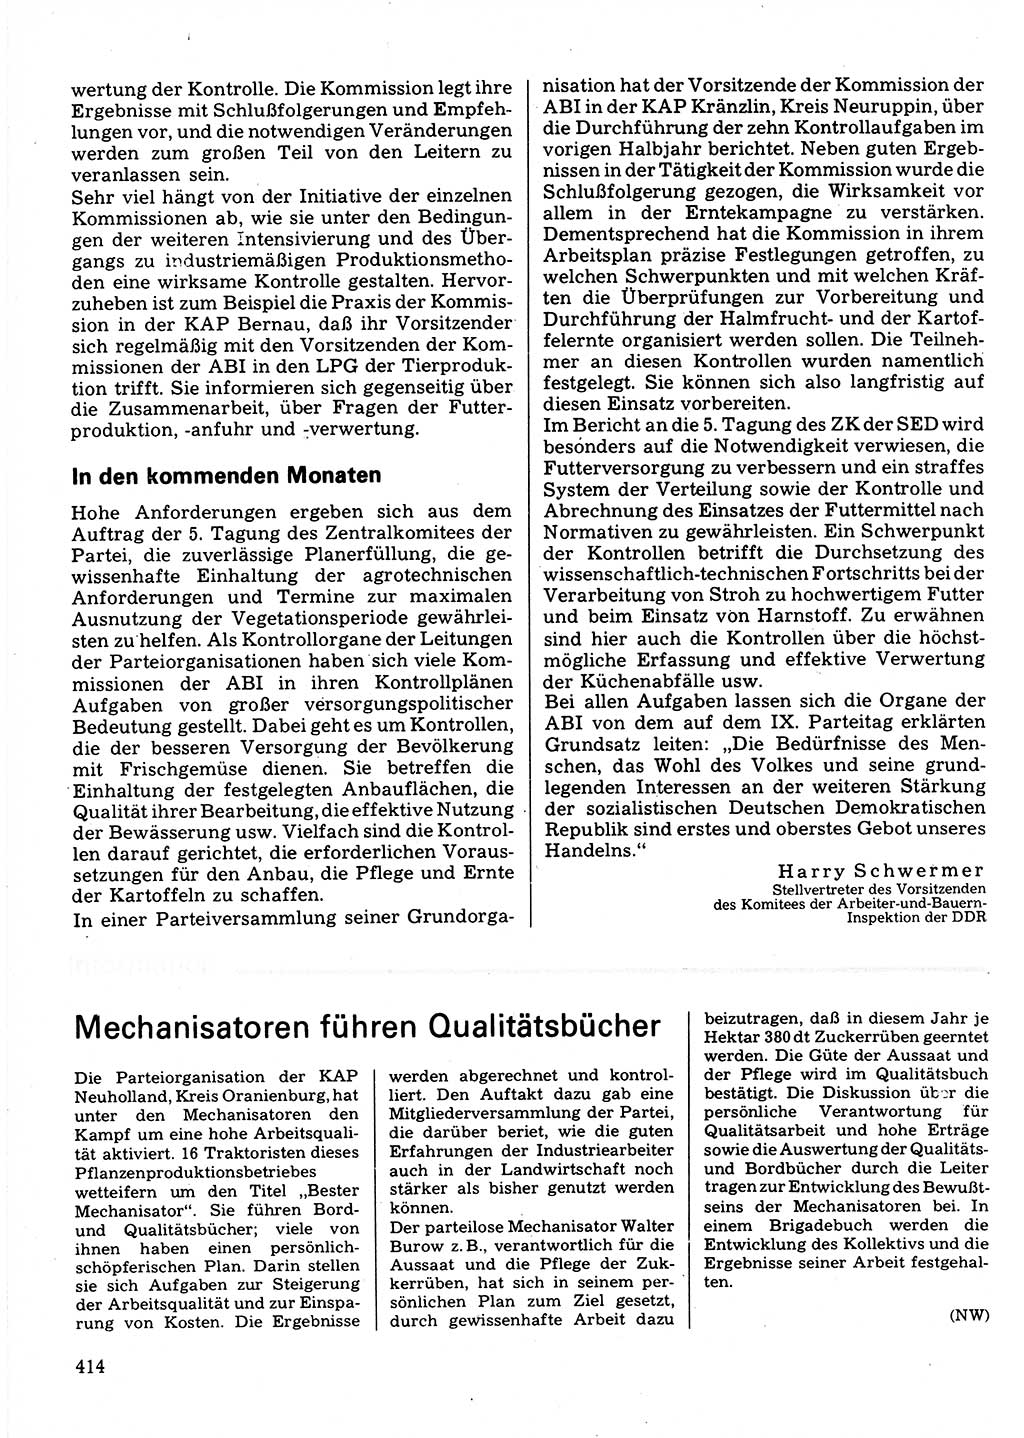 Neuer Weg (NW), Organ des Zentralkomitees (ZK) der SED (Sozialistische Einheitspartei Deutschlands) für Fragen des Parteilebens, 32. Jahrgang [Deutsche Demokratische Republik (DDR)] 1977, Seite 414 (NW ZK SED DDR 1977, S. 414)